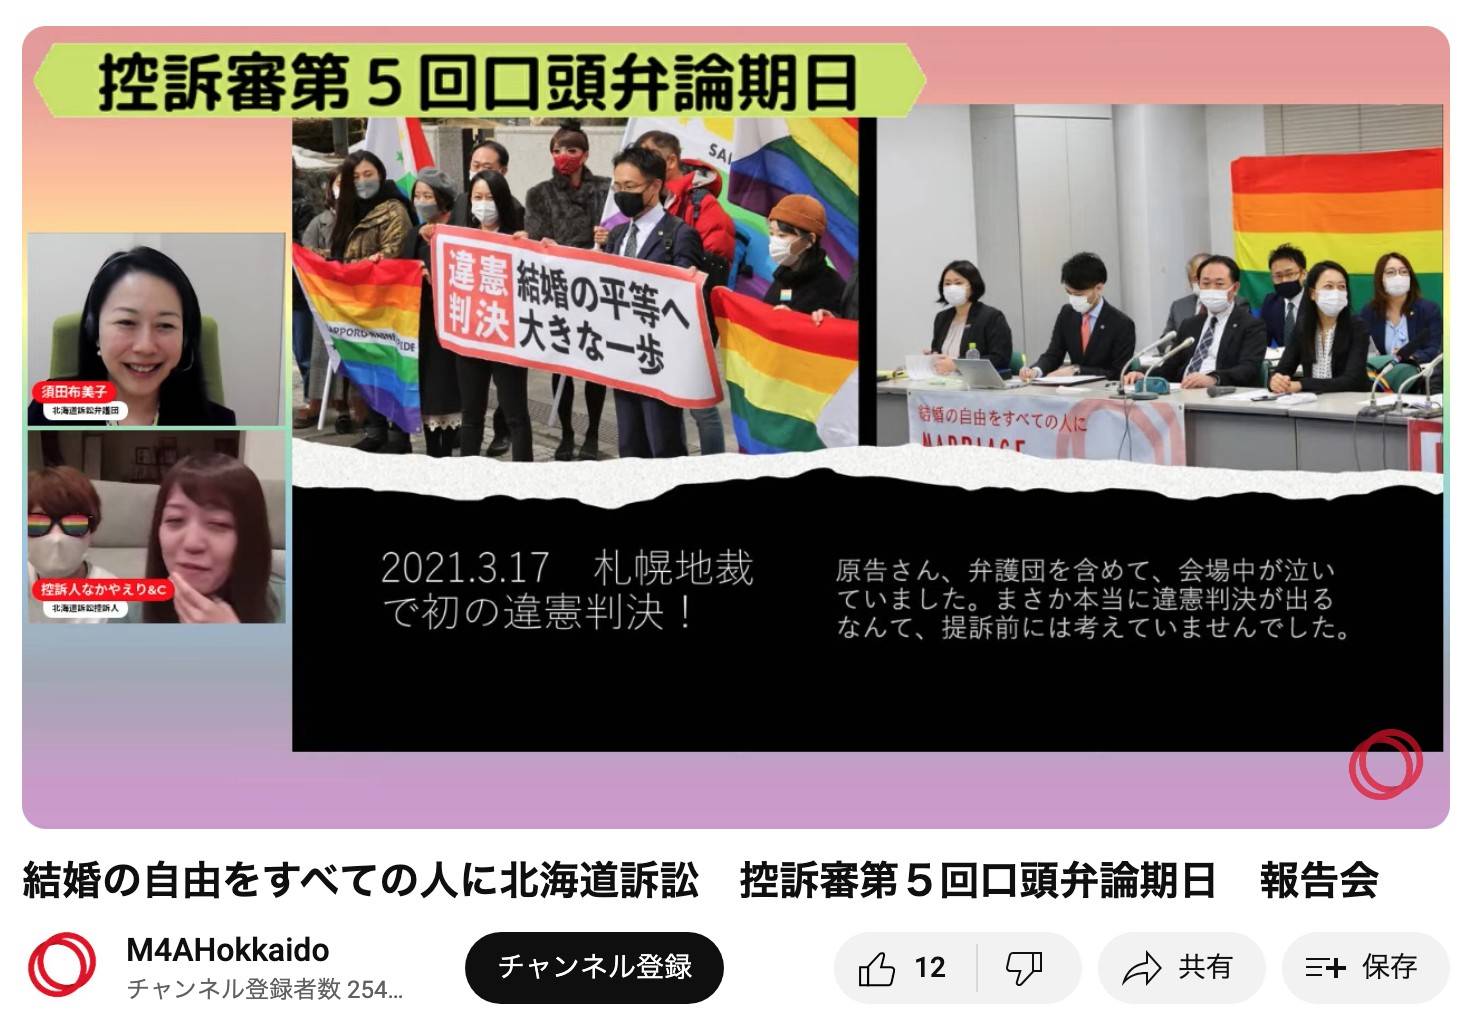 配信報告の様子。YouTubeの画面に、「結婚の自由をすべての人に」北海道訴訟の札幌地裁判決が出た直後に、札幌地裁の前で「違憲判決　結婚の平等へ大きな一歩」と書かれた横断幕を持った弁護士やレインボーフラッグを掲げた支援者たちが写っている。